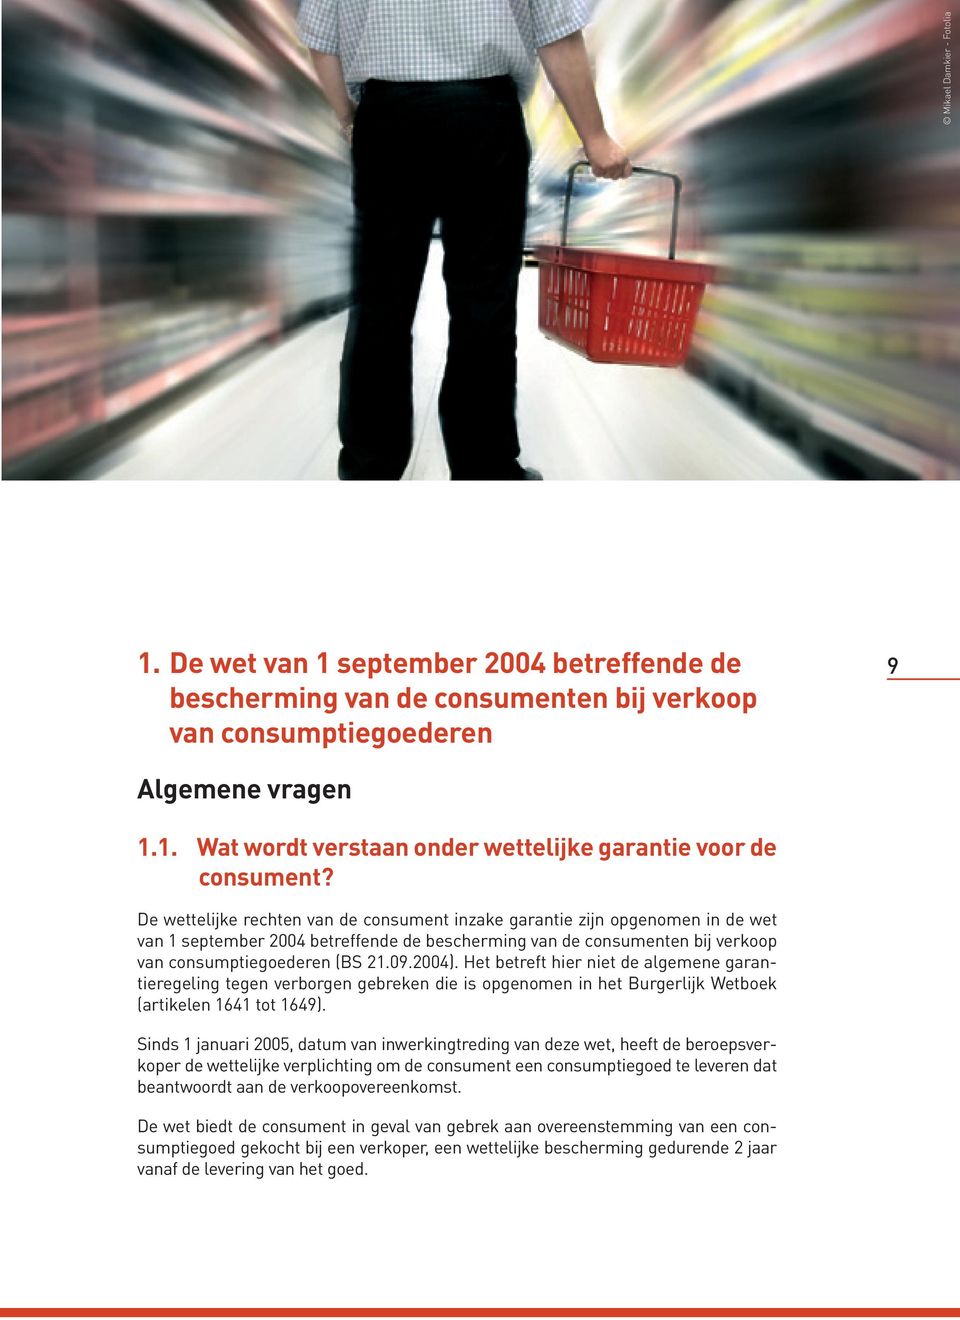 De wettelijke rechten van de consument inzake garantie zijn opgenomen in de wet van 1 september 2004 betreffende de bescherming van de consumenten bij verkoop van consumptiegoederen (BS 21.09.2004).